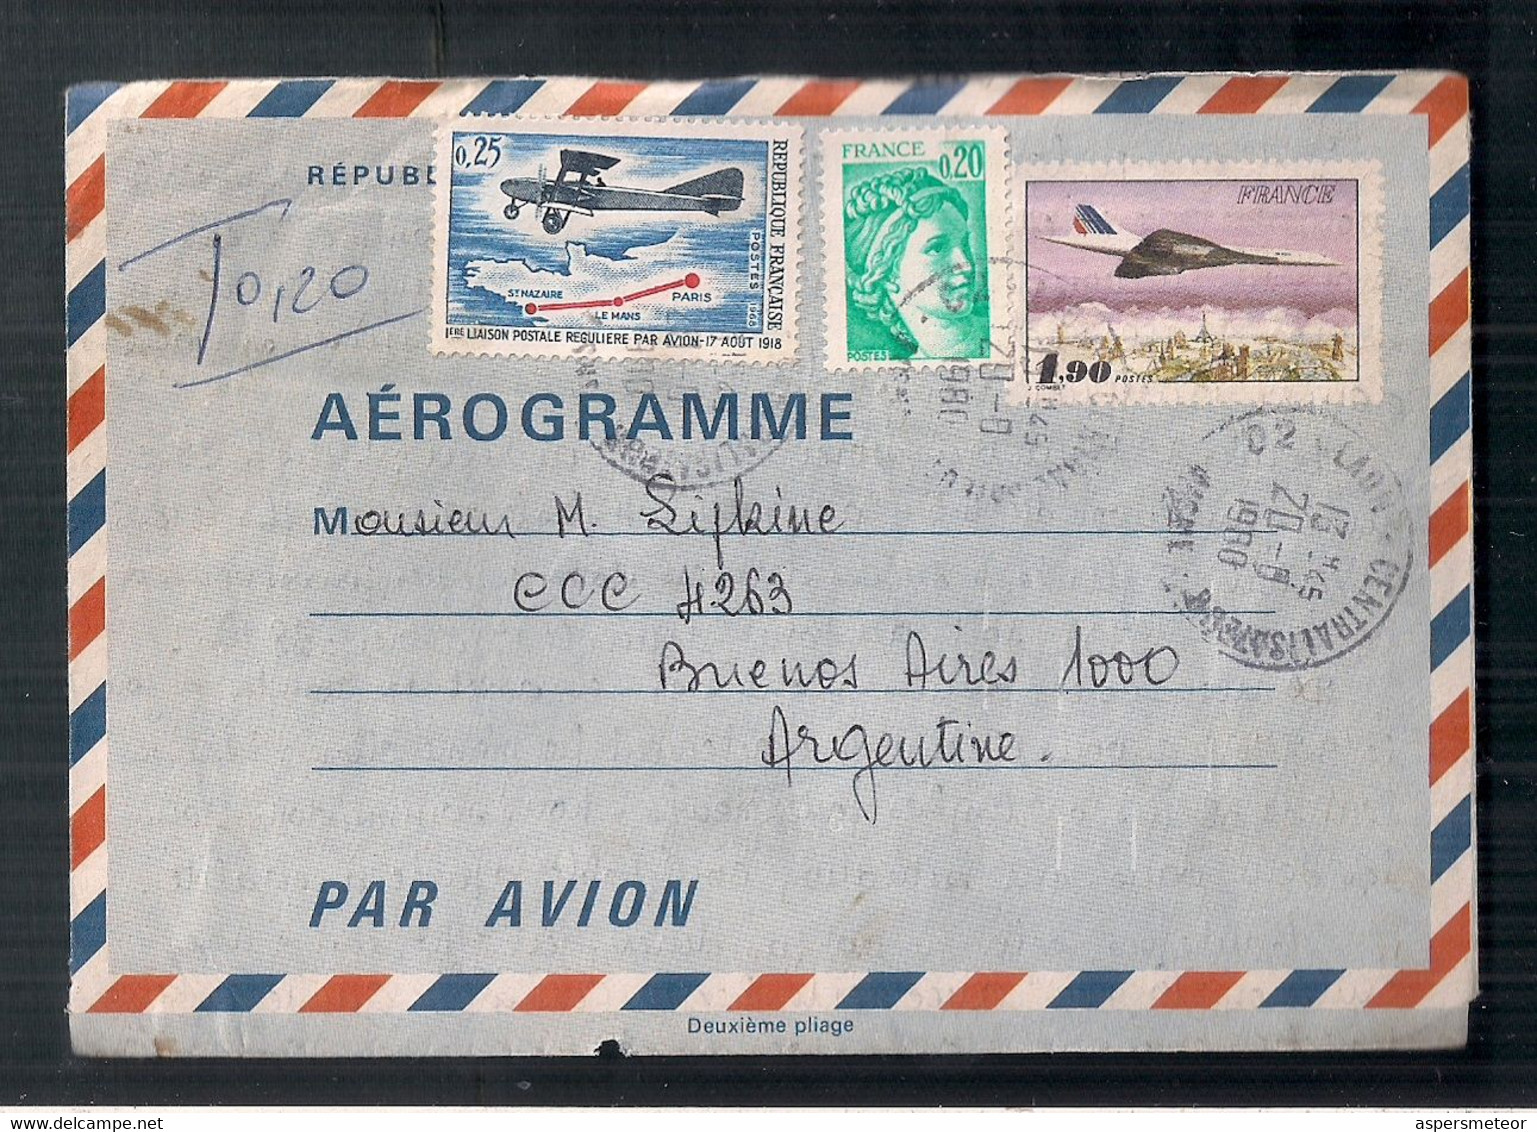 L'aérogramme De La France Diffusé à L'Argentine -A1RR2- - Covers & Documents